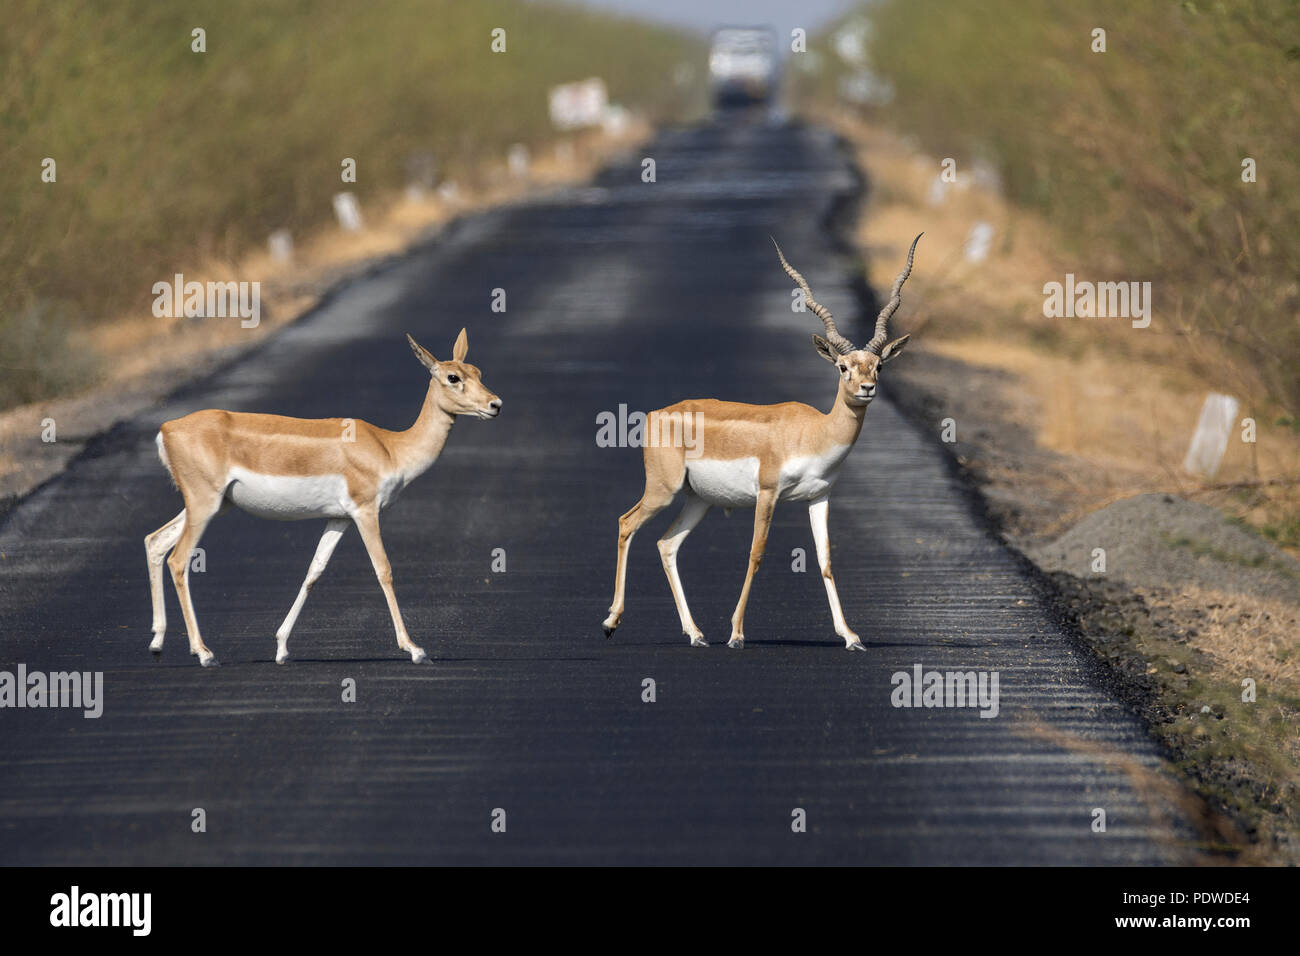 Blackbucks (Antilope cervicapra) crossing road Stock Photo